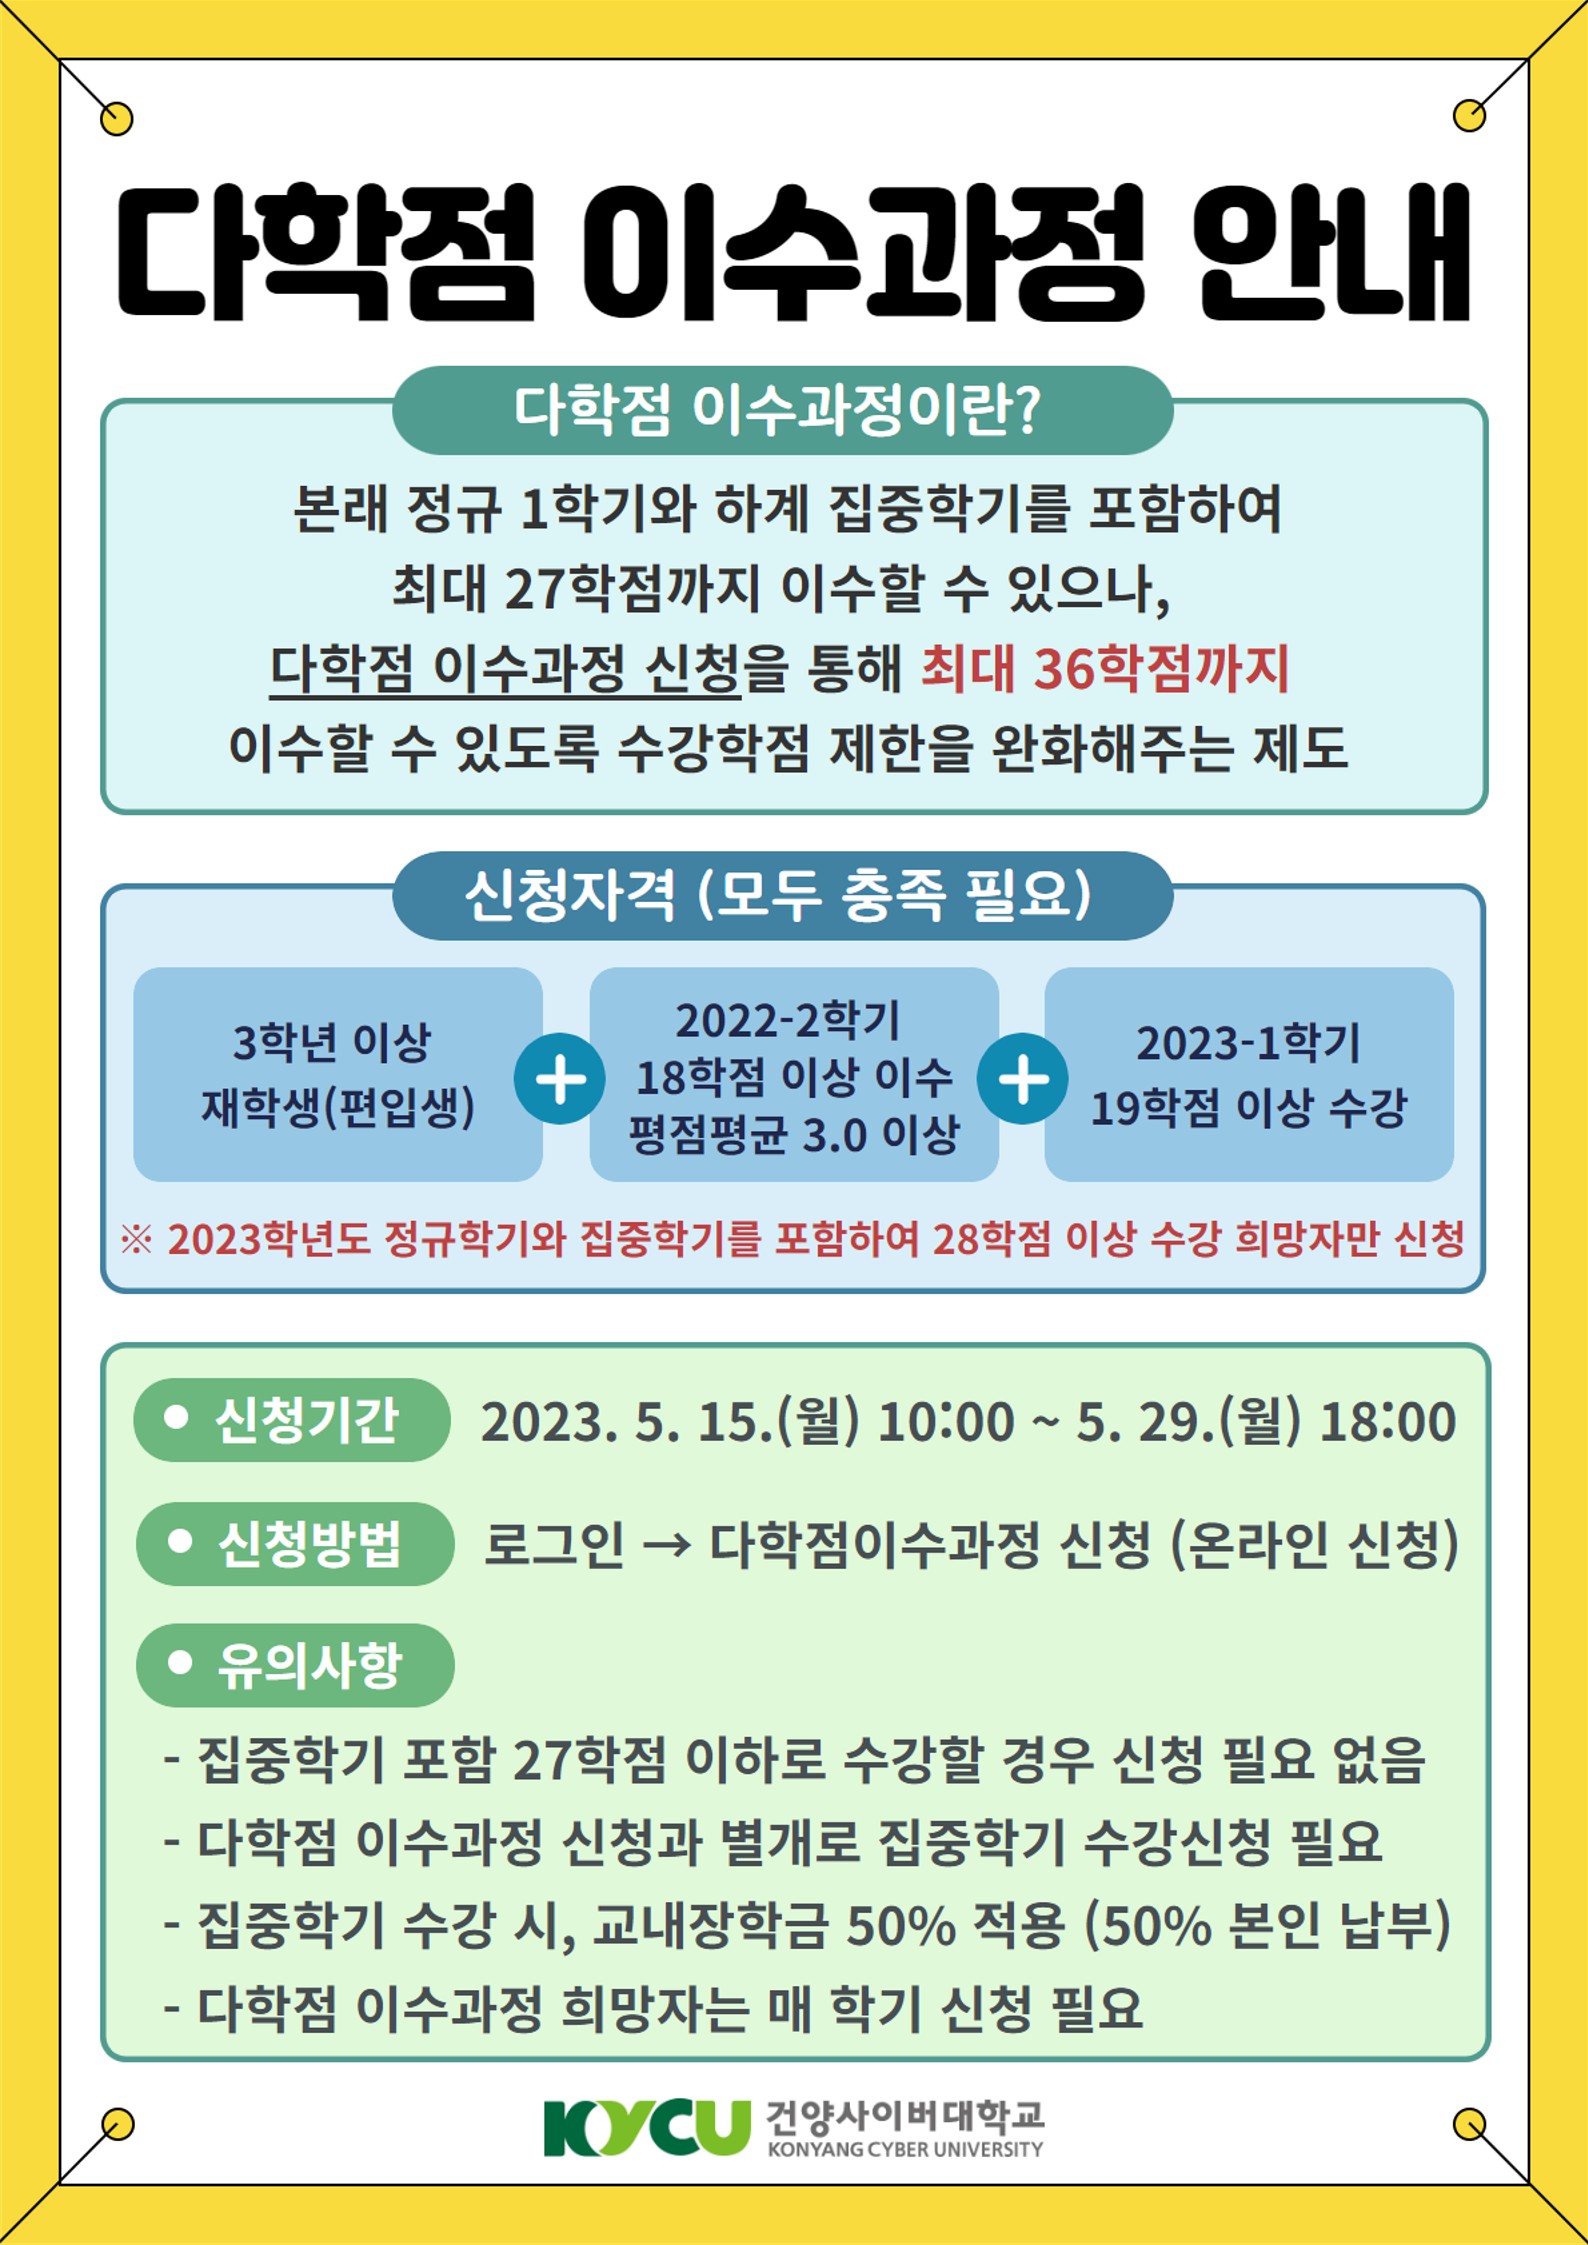 2023-1학기 다학점 이수과정 신청 안내